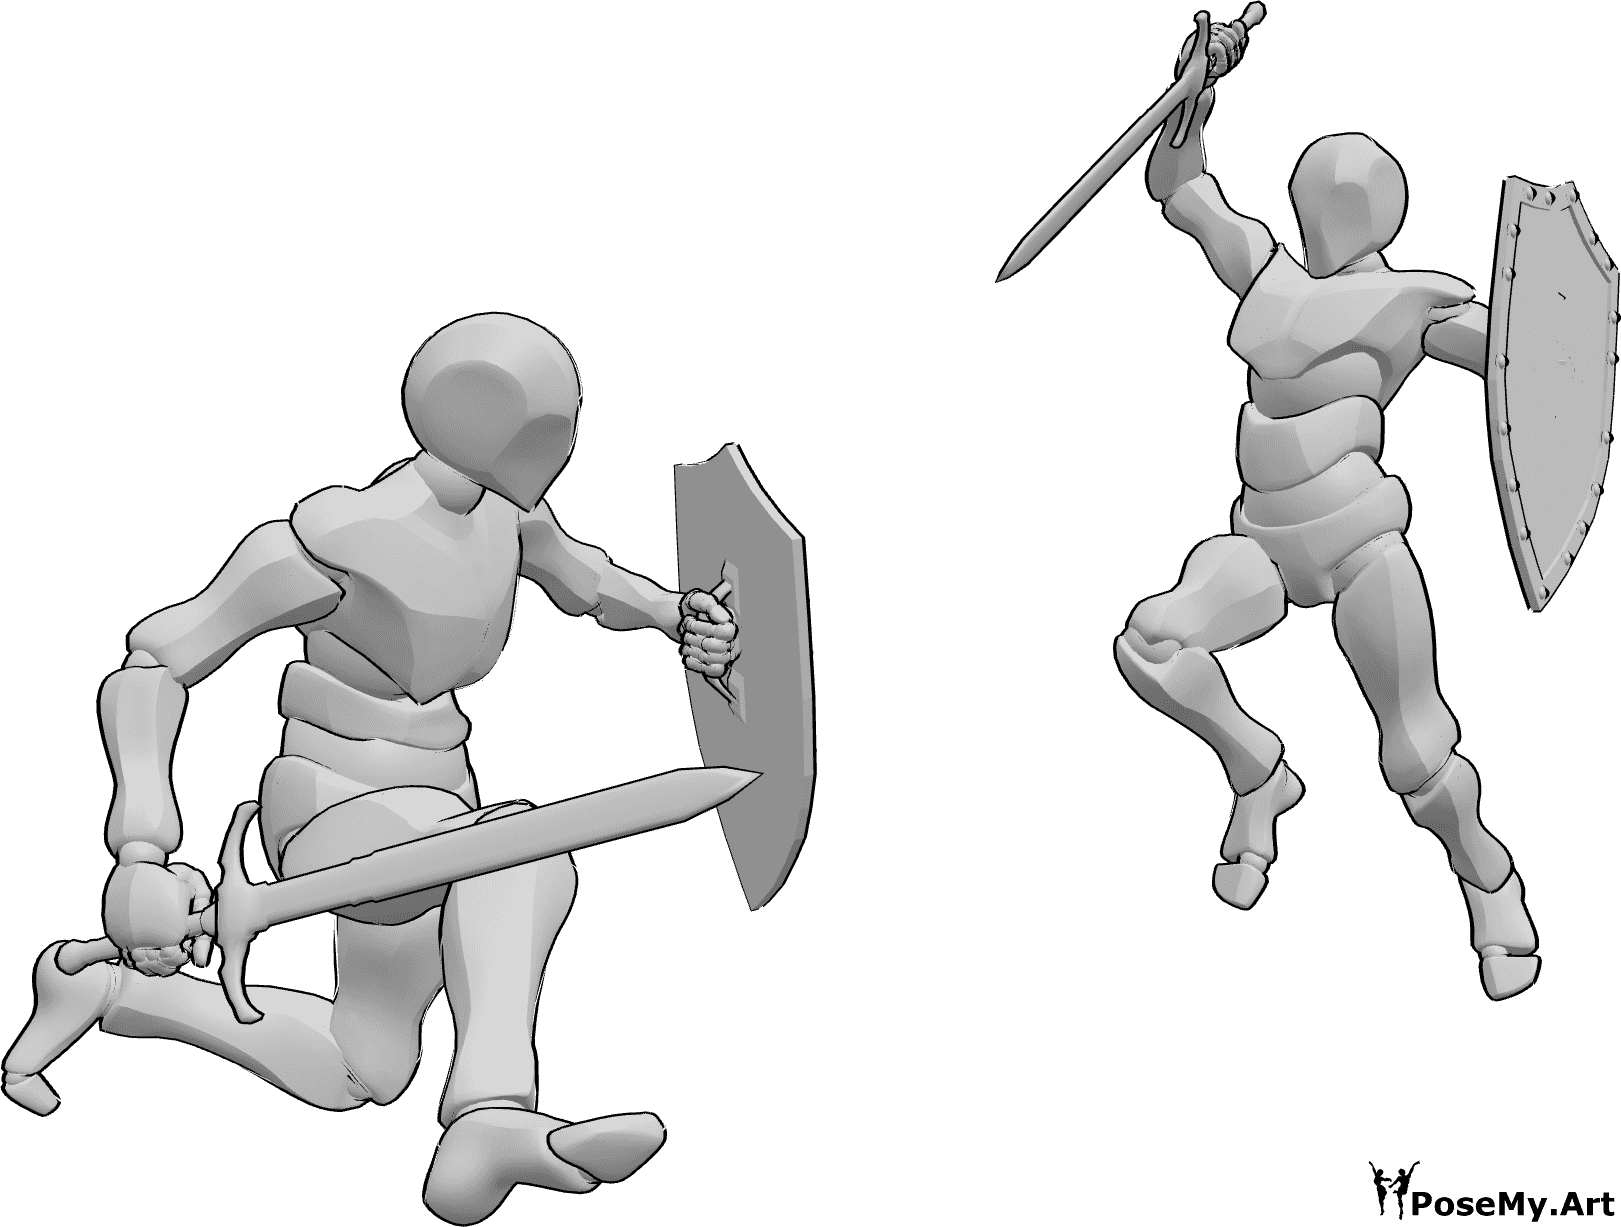 Posen-Referenz- Schwert-Schild-Kampf-Pose - Zwei männliche Personen kämpfen mit Schwertern und Schilden, Angriffspose